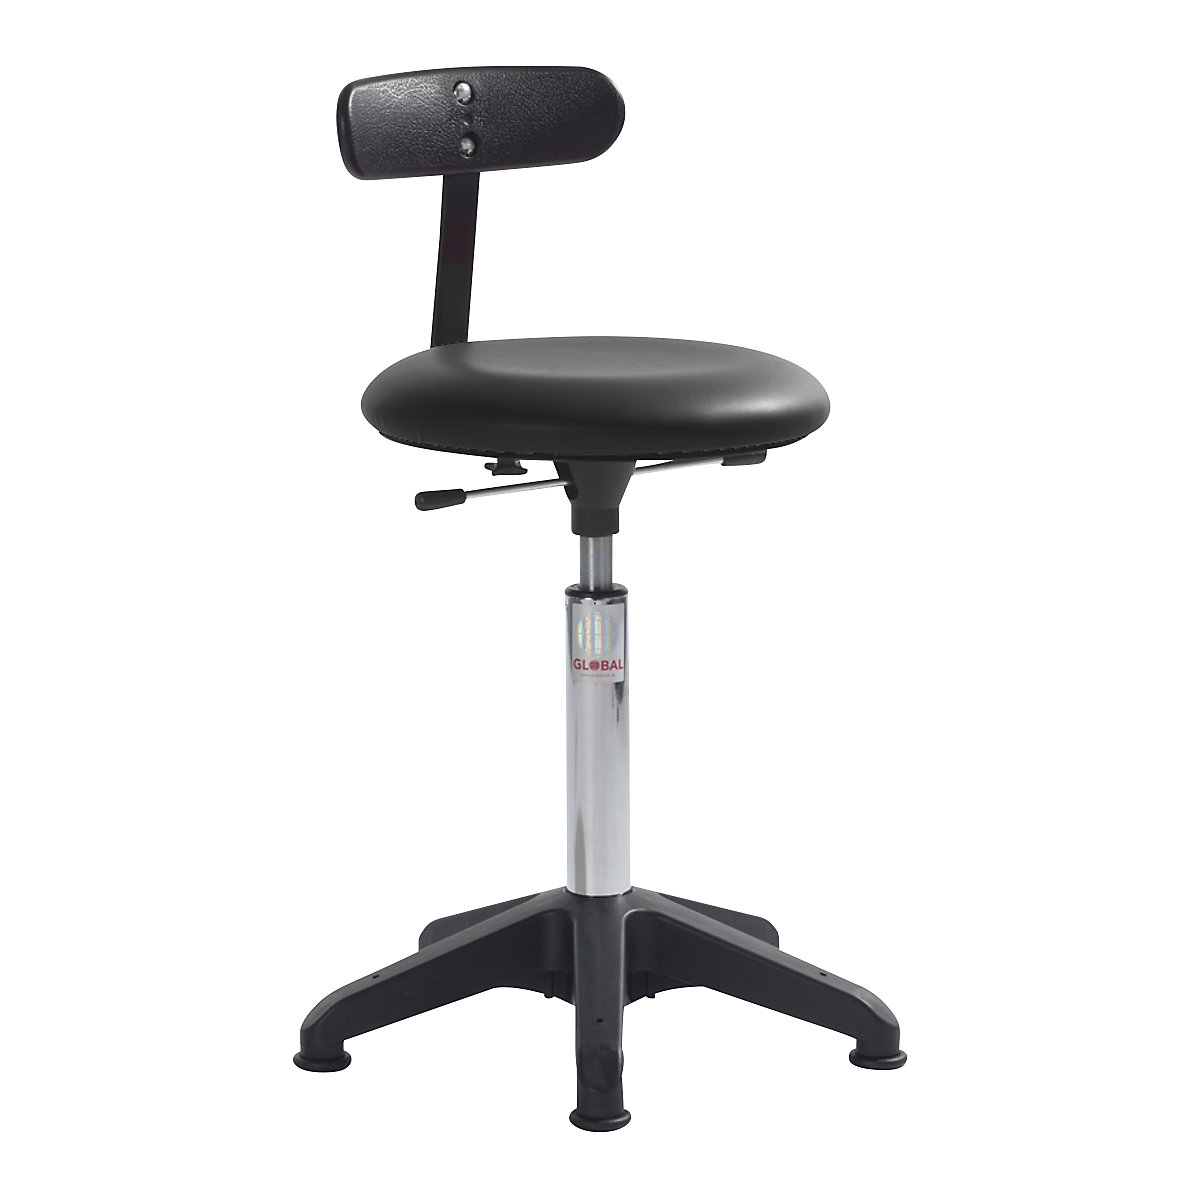 Industrial stool, height adjustable